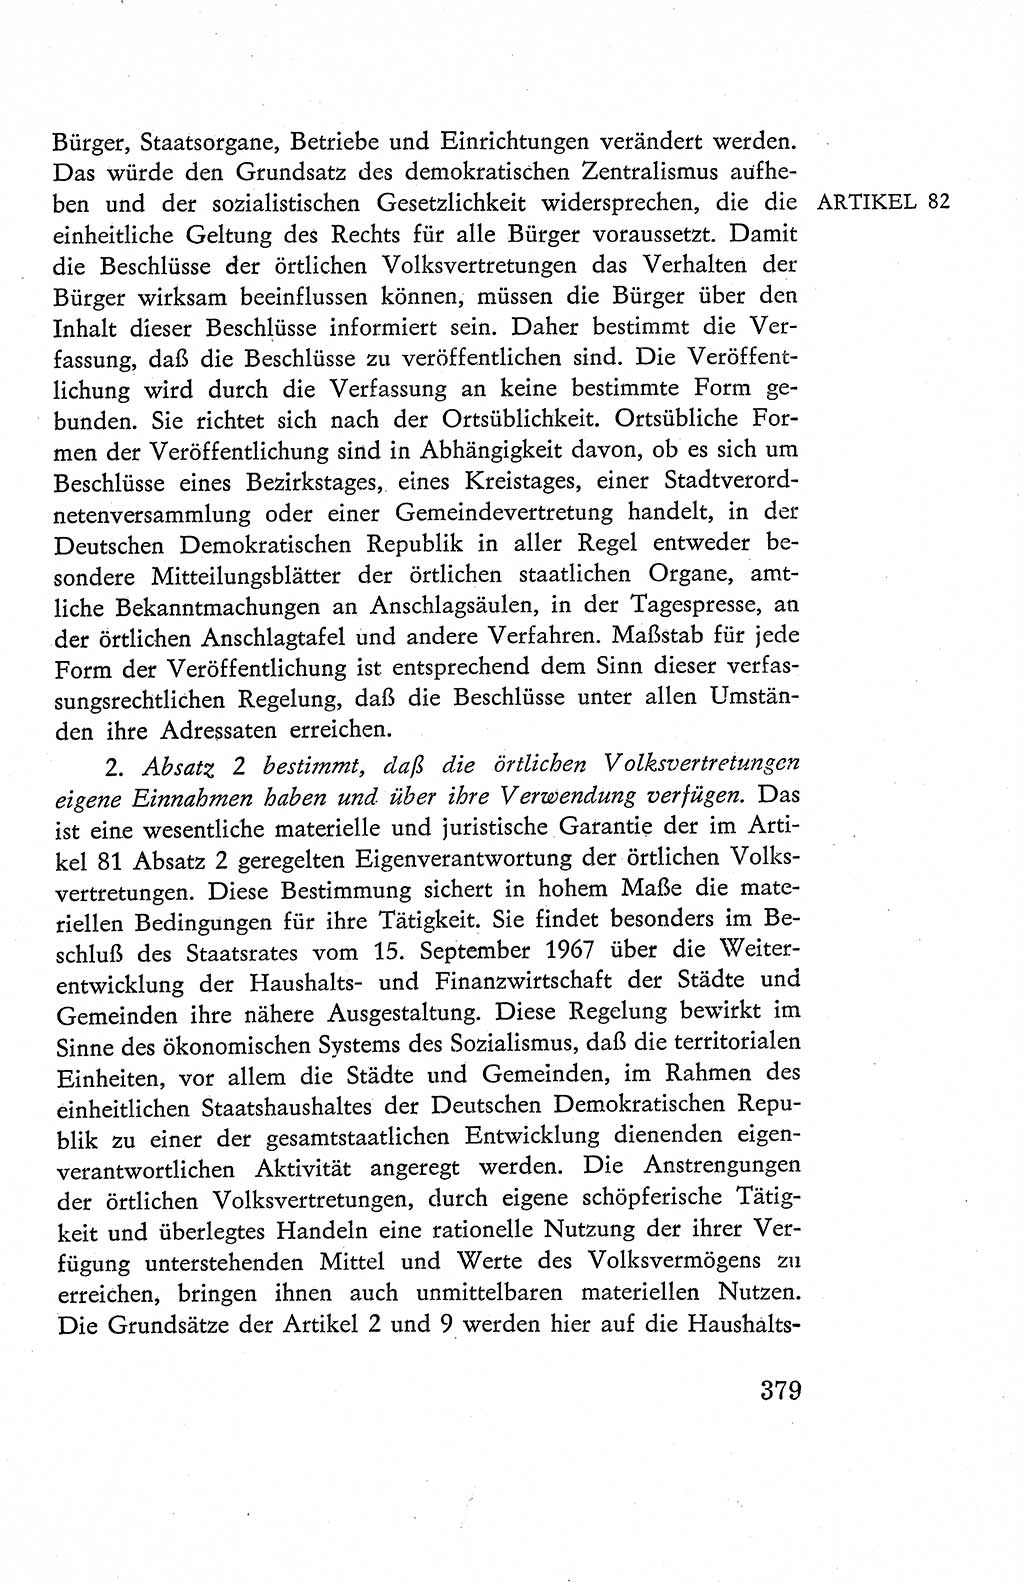 Verfassung der Deutschen Demokratischen Republik (DDR), Dokumente, Kommentar 1969, Band 2, Seite 379 (Verf. DDR Dok. Komm. 1969, Bd. 2, S. 379)